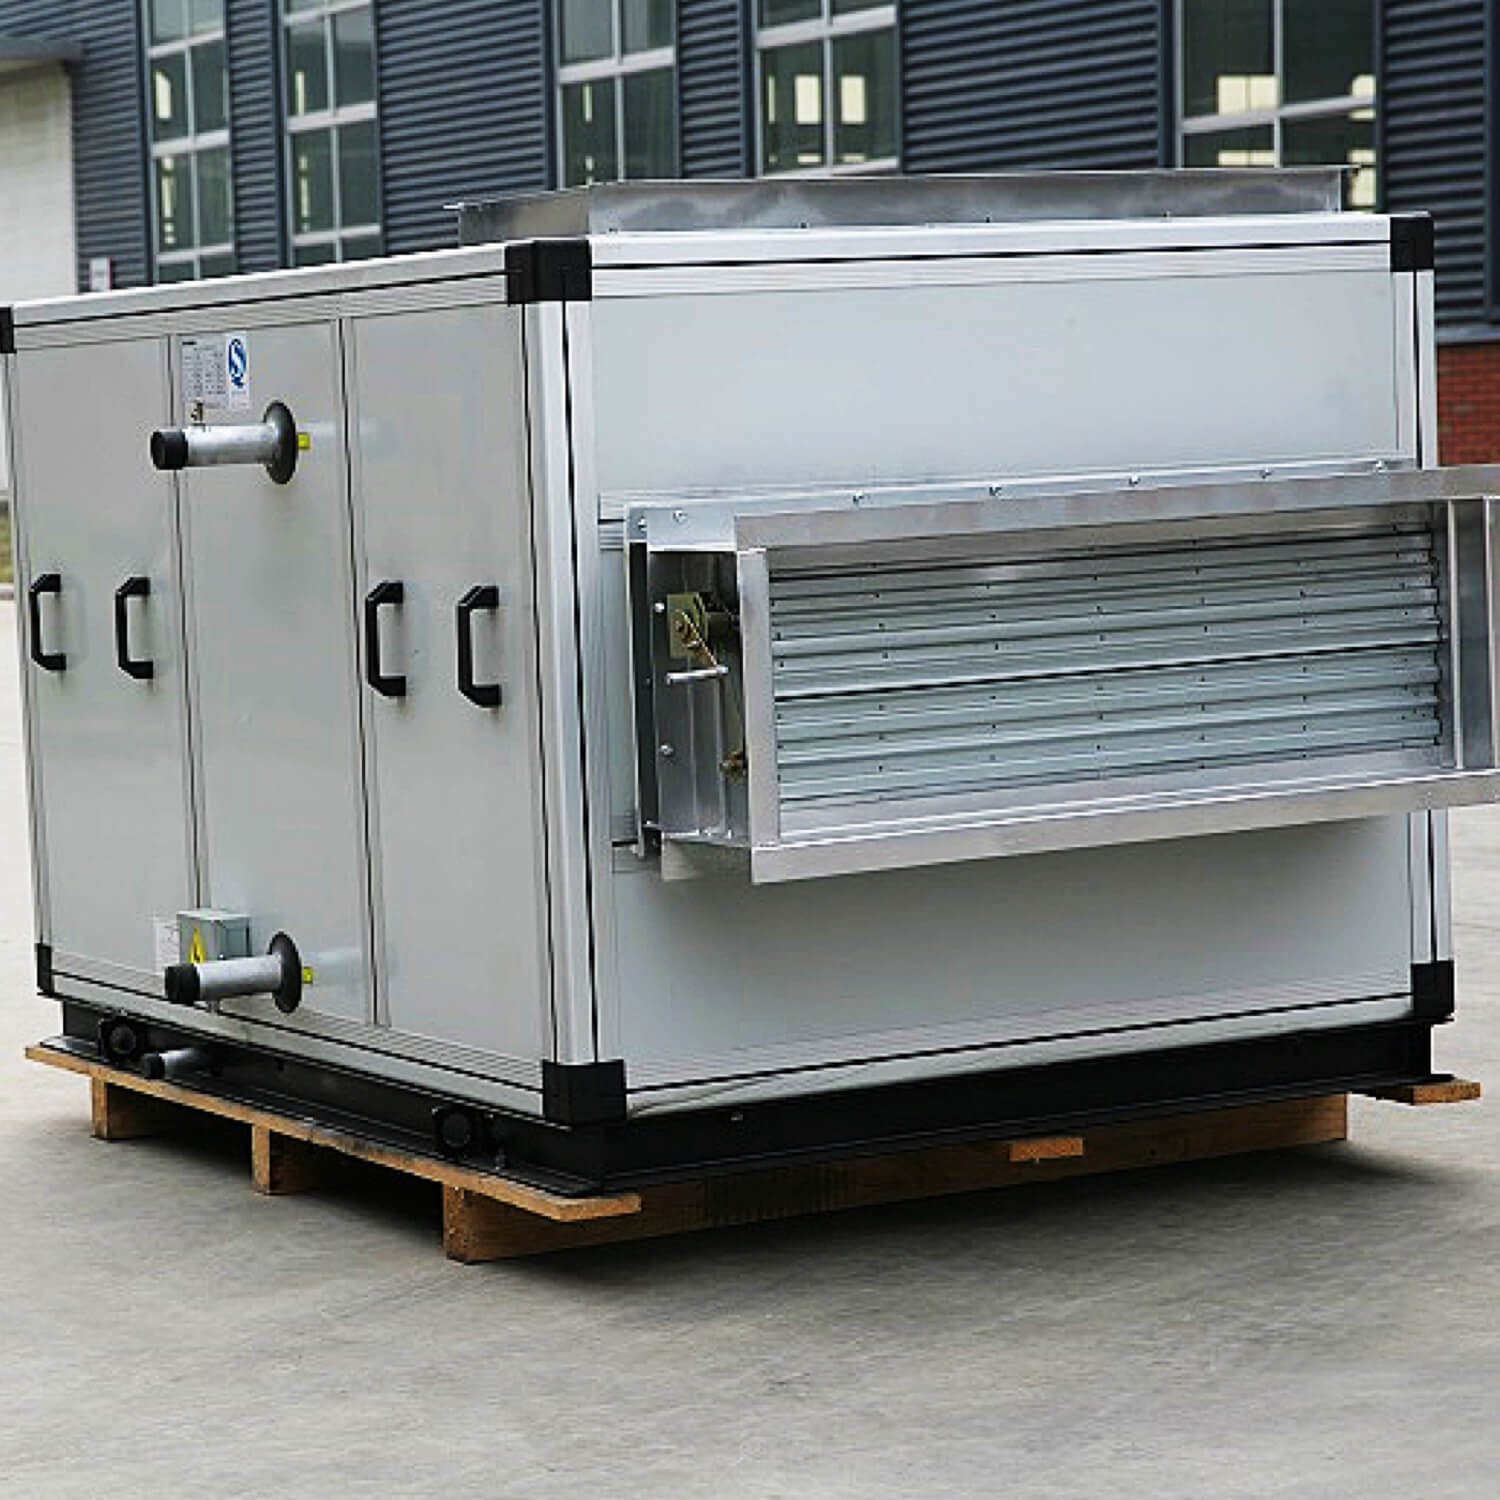 HVAC 시스템 제조 복합공기조화기